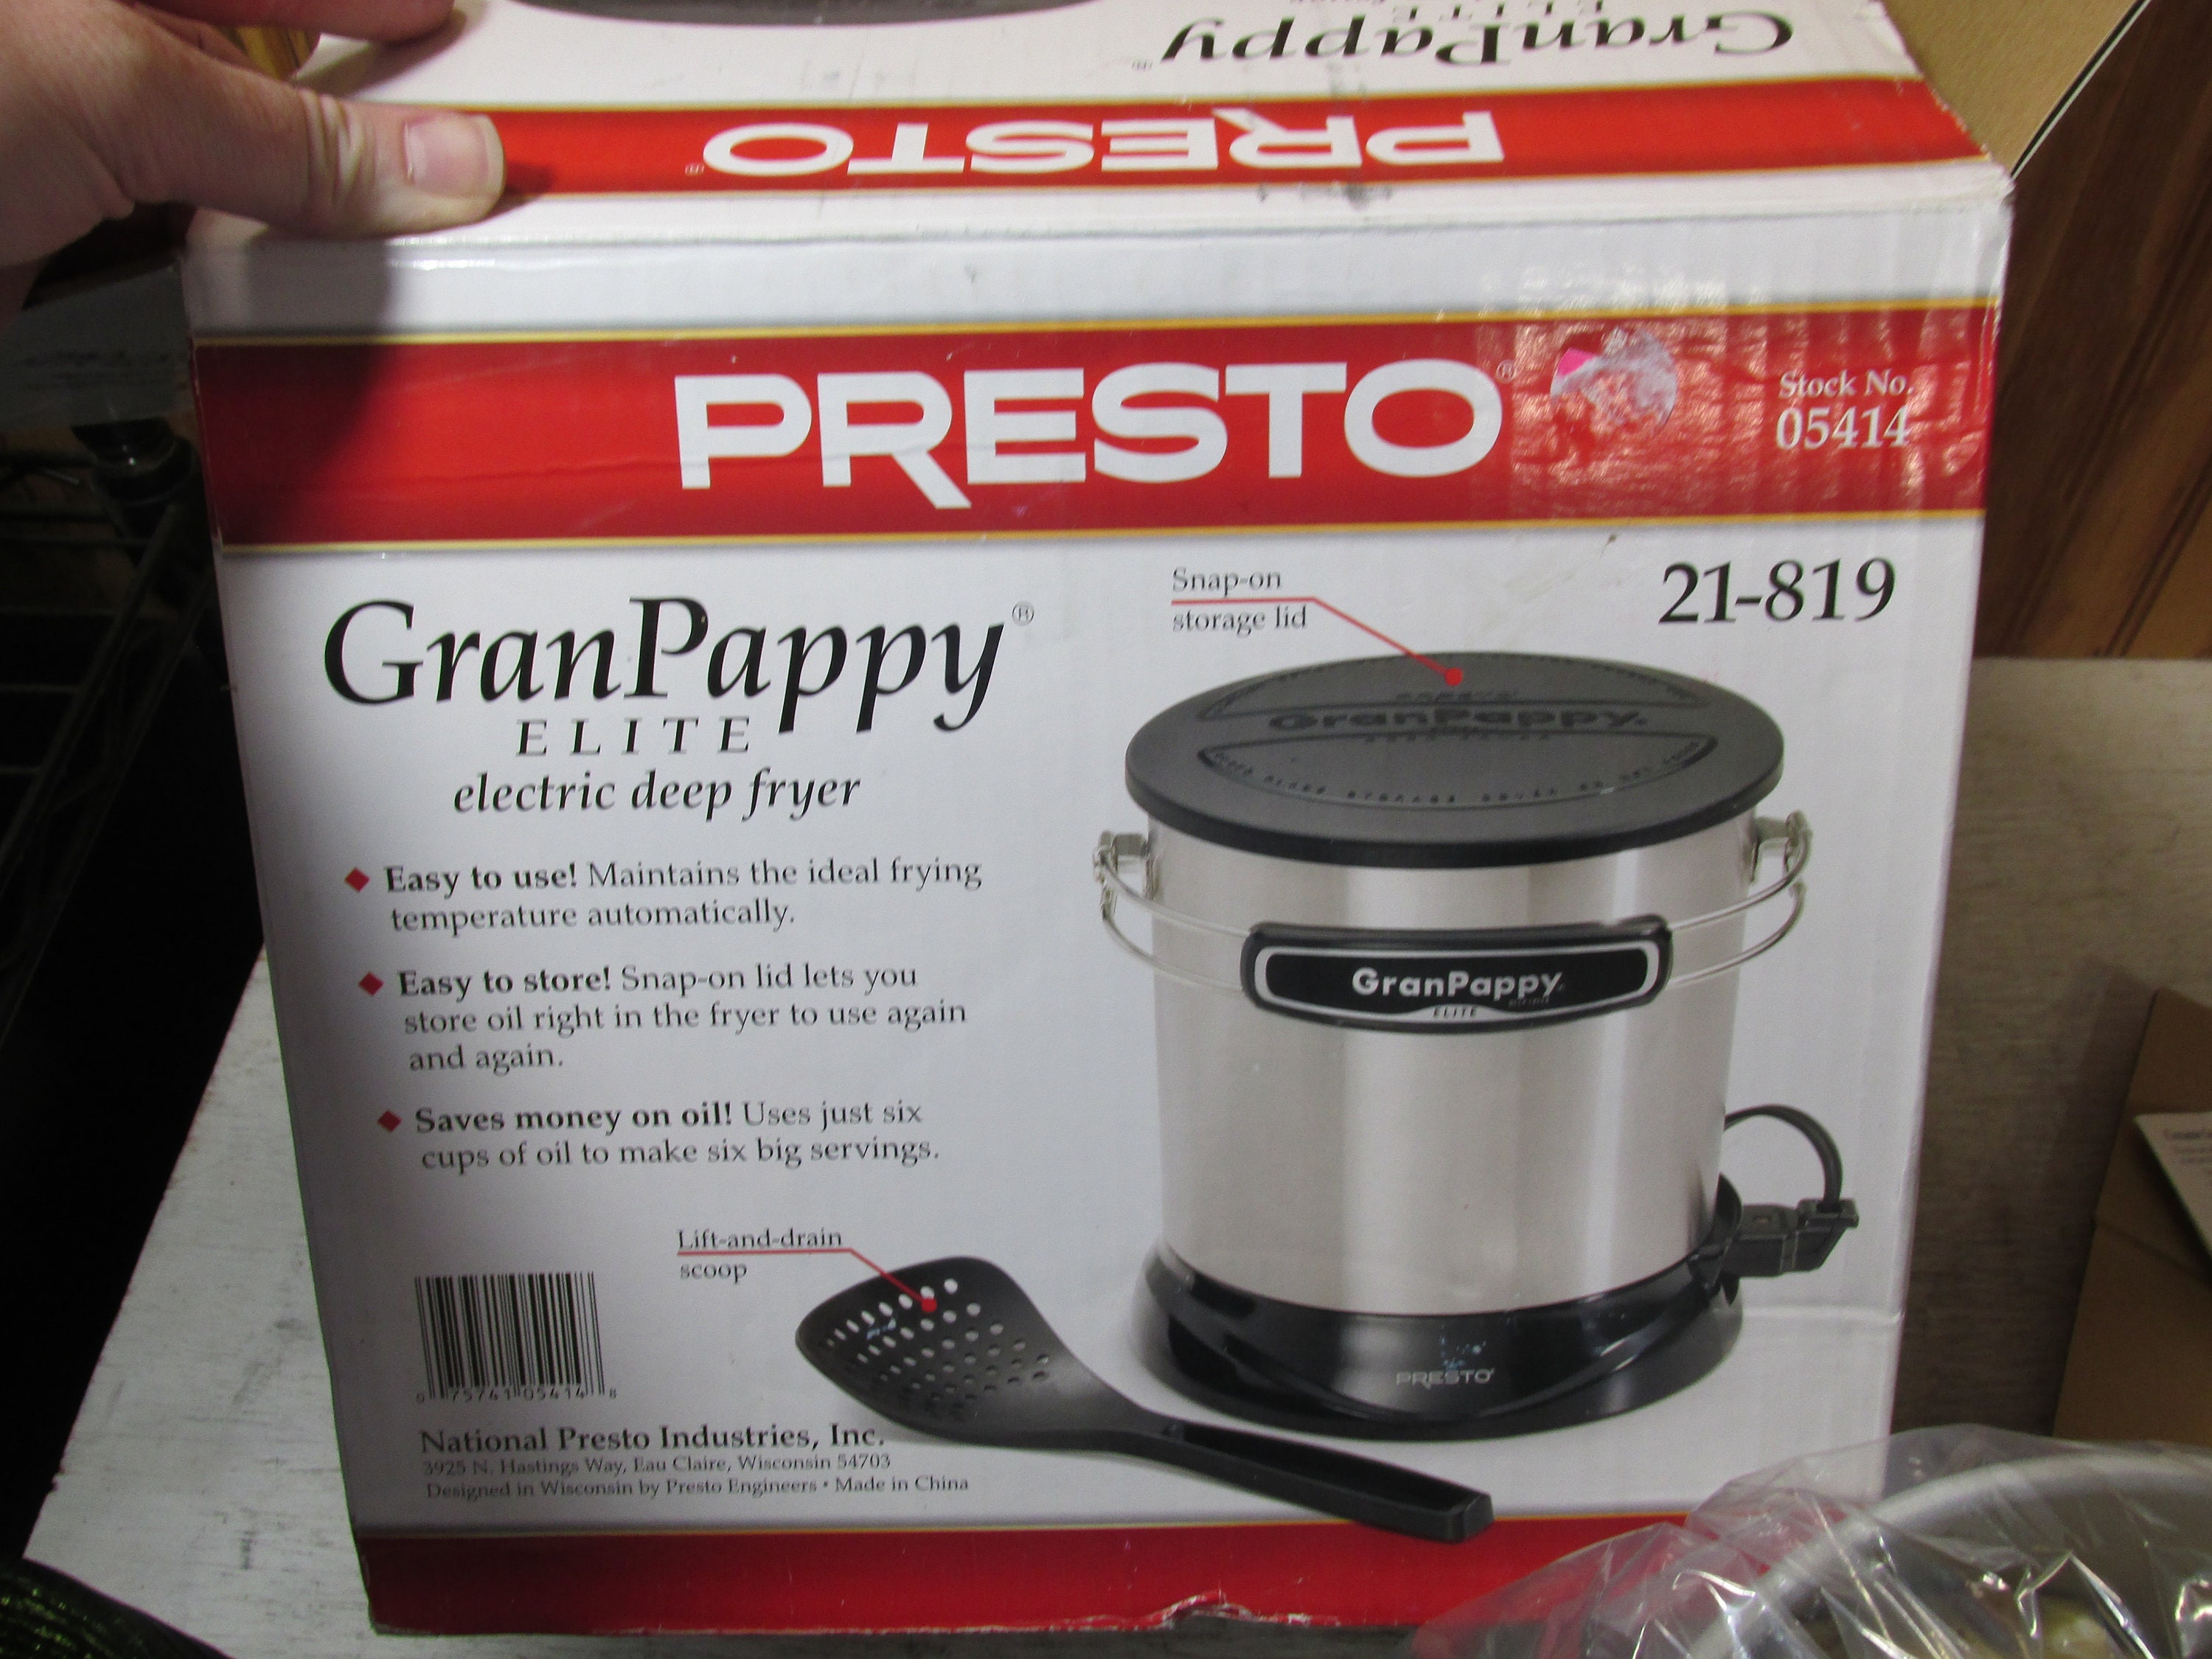 NEW Presto Granpappy Elite Electric Deep Fryer No. 05414 in Original Box 6  Cup 